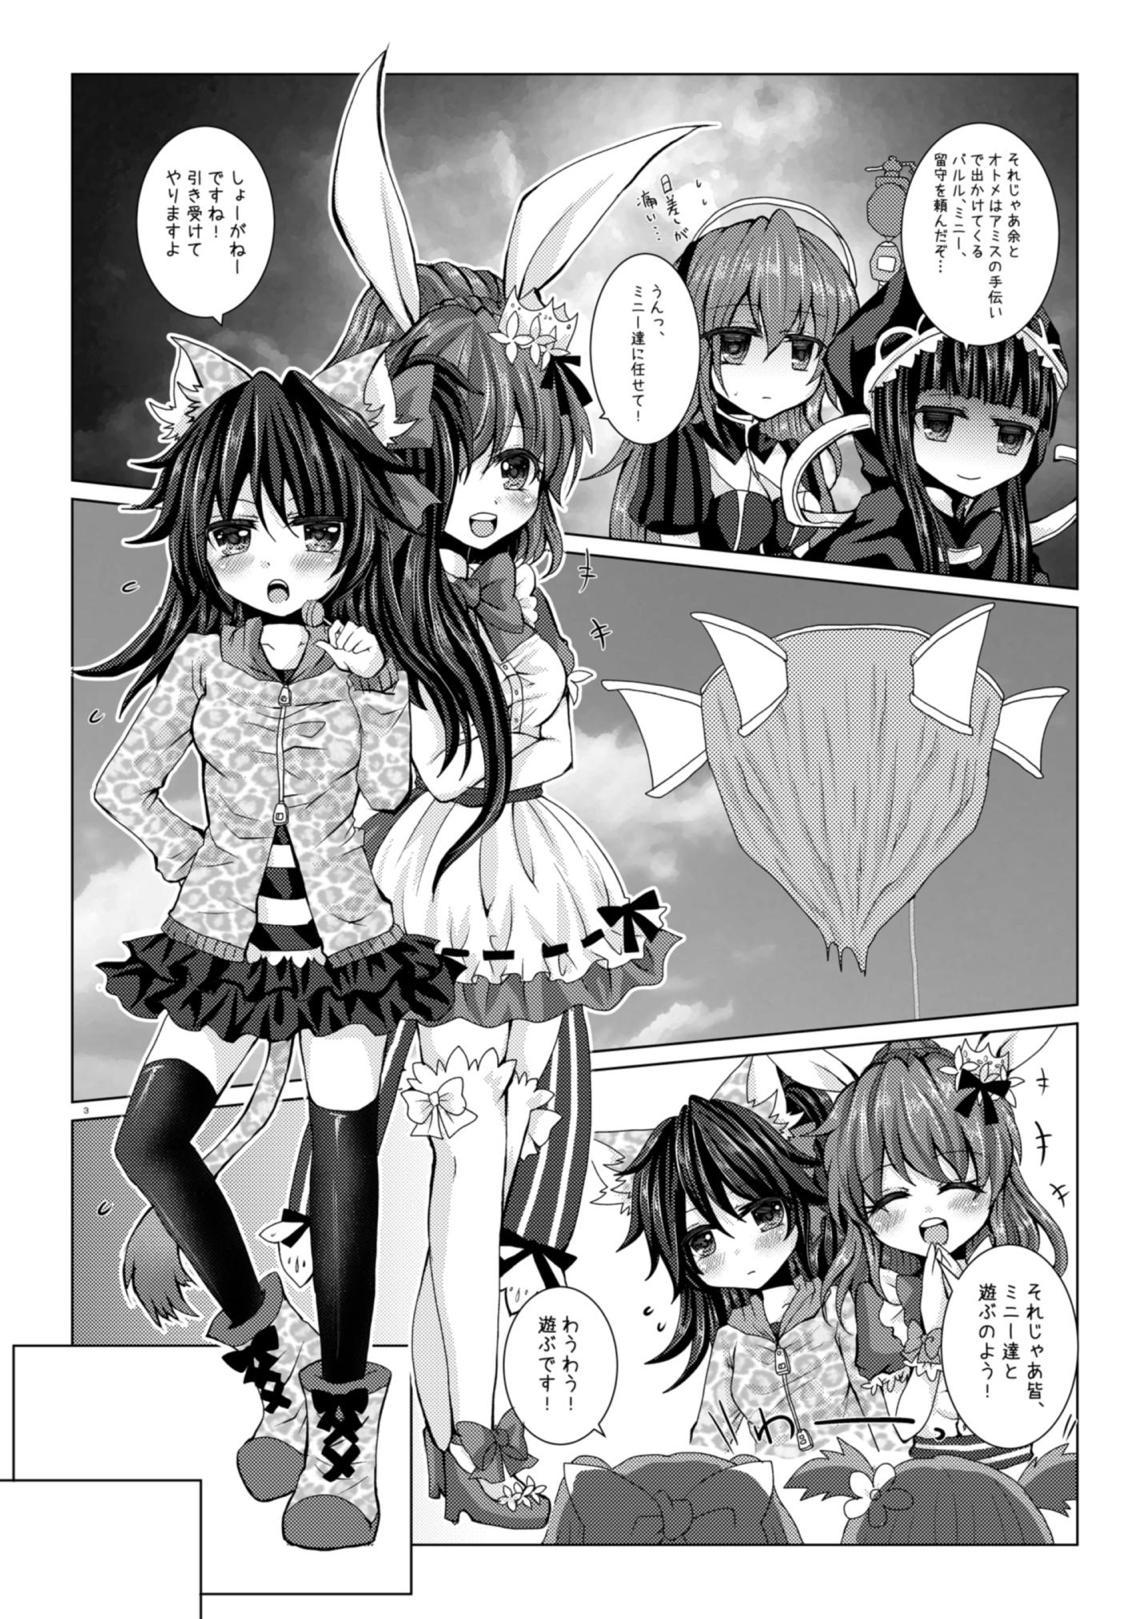 Tgirls Girls' Talk wa Amakunai - Emil chronicle online Rubdown - Page 2